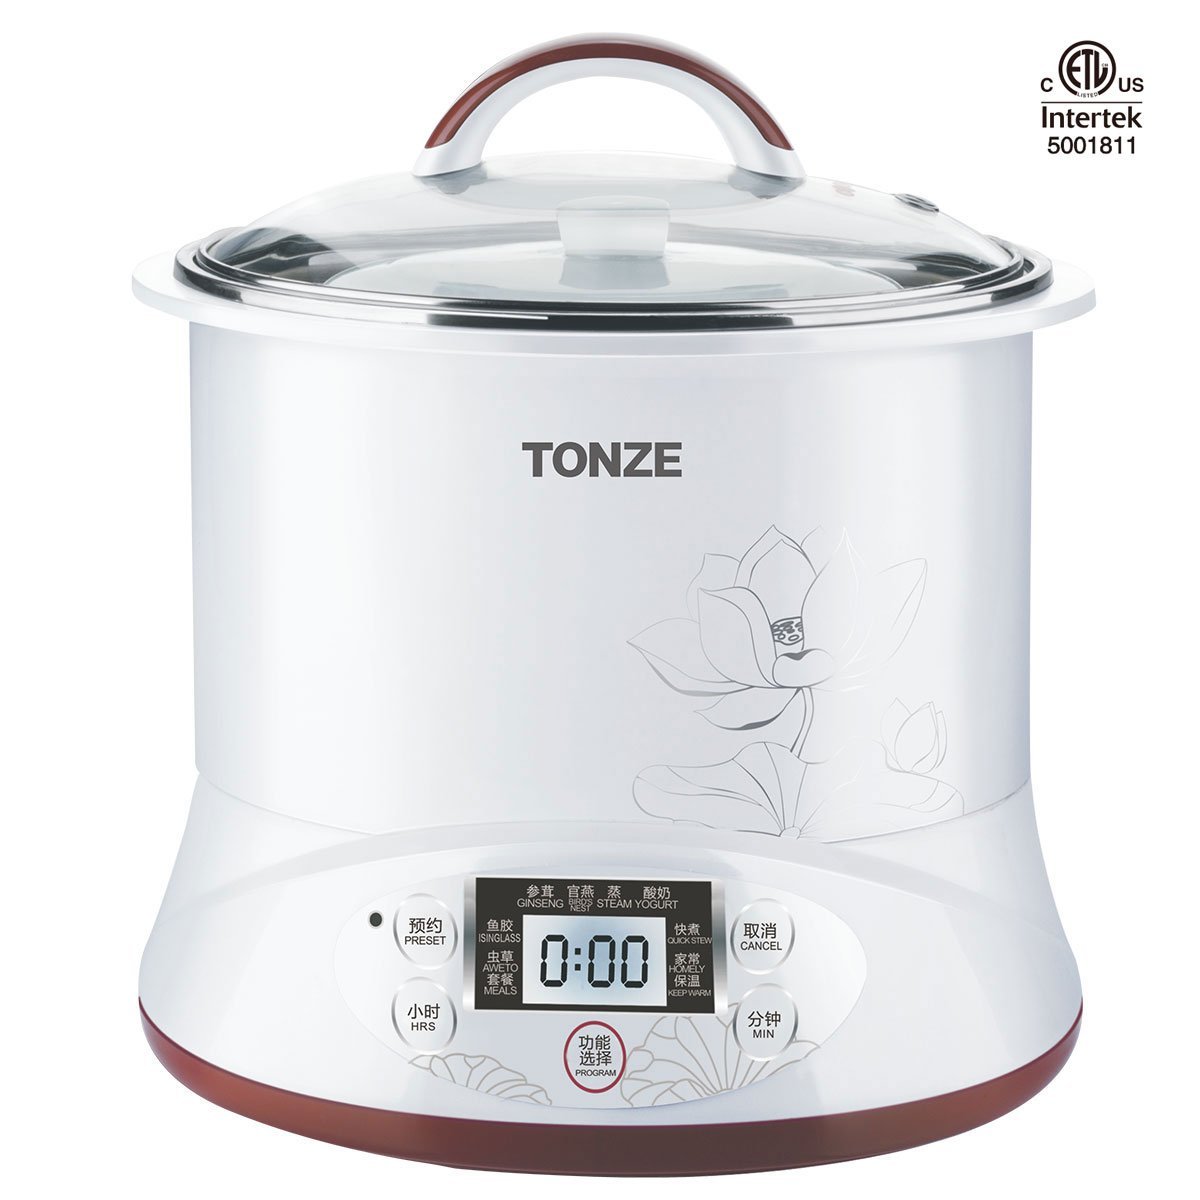 Tonze Smart Ceramic Pot Electric Stewpot DGD22-22EG, Slow Cooker